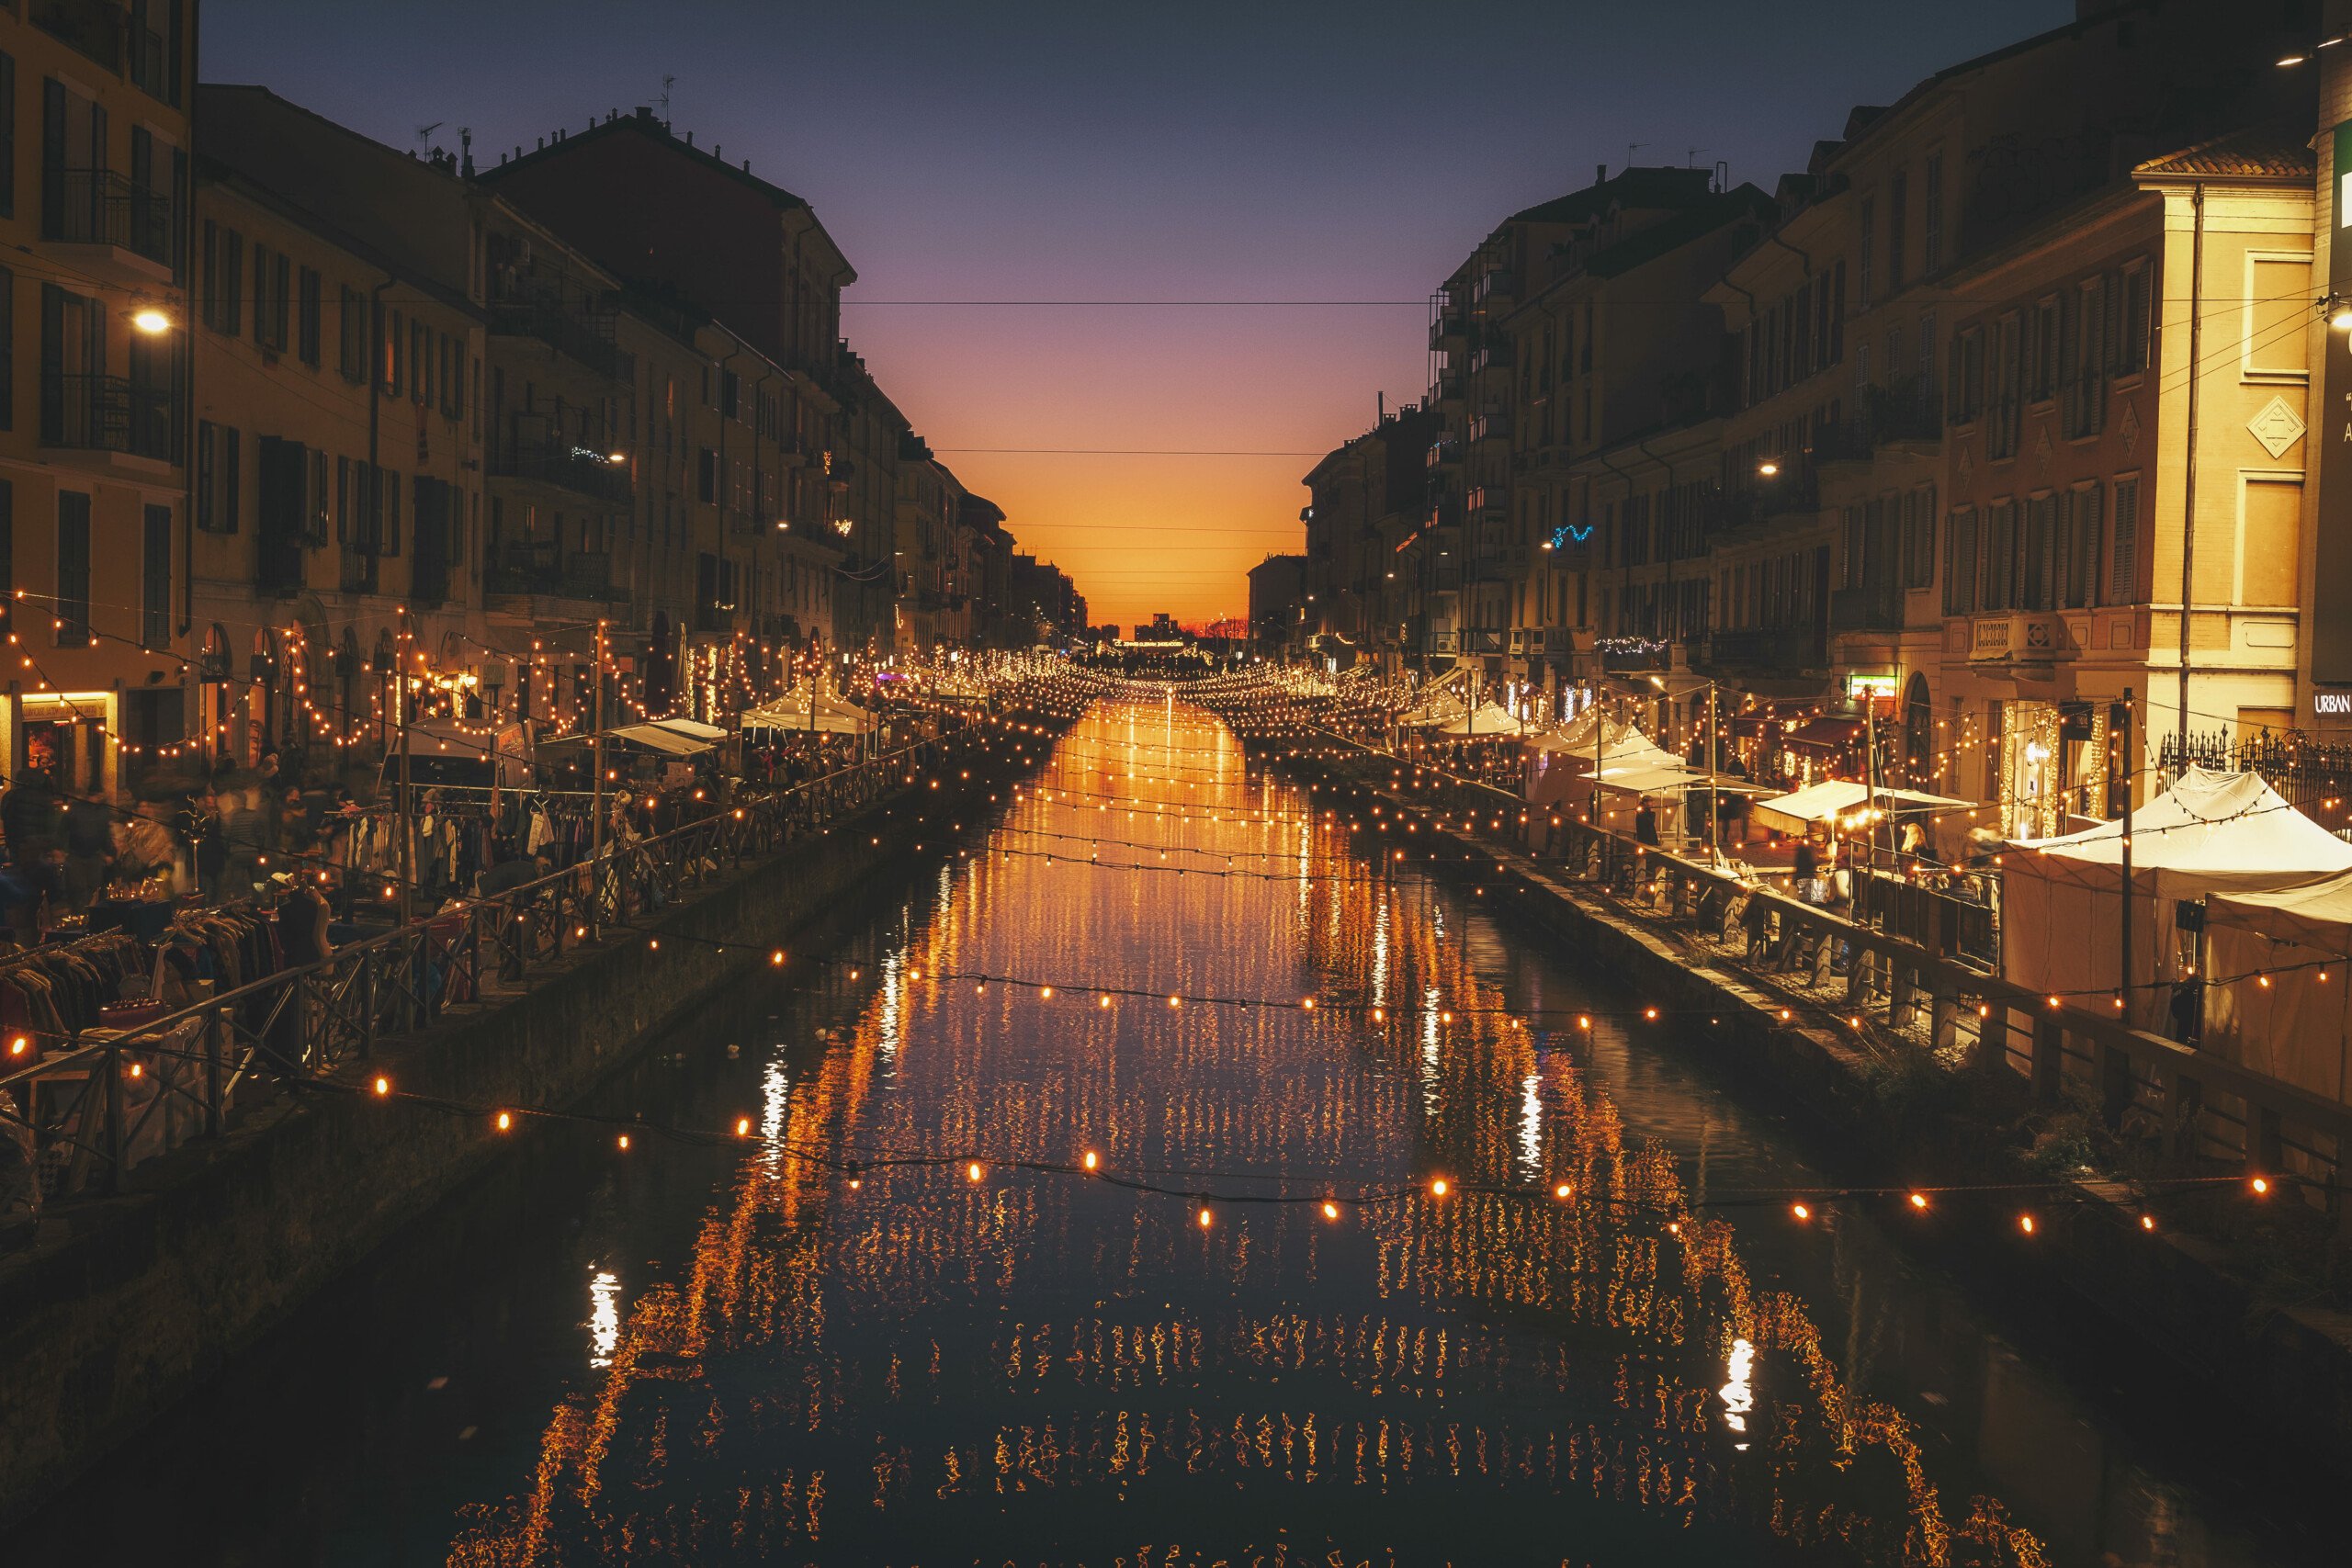 Turismo em Milão | Canal Navigli no bairro navigli sob a luz de luzes penduradas | Conexão123